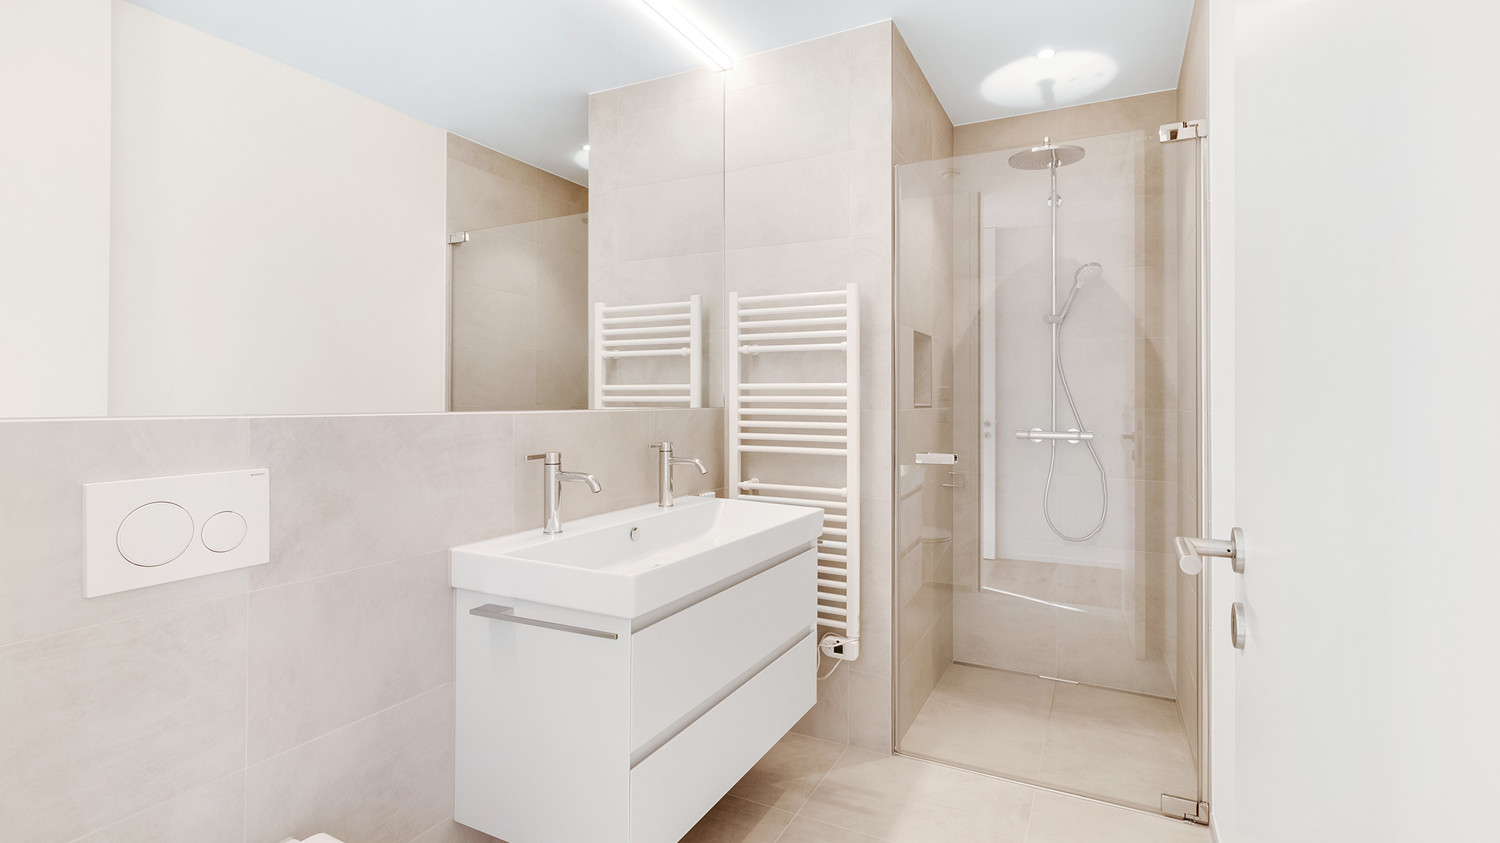 Luxuriöse Nasszelle mit WC, Doppel-Lavabo und Dusche im Attikabereich